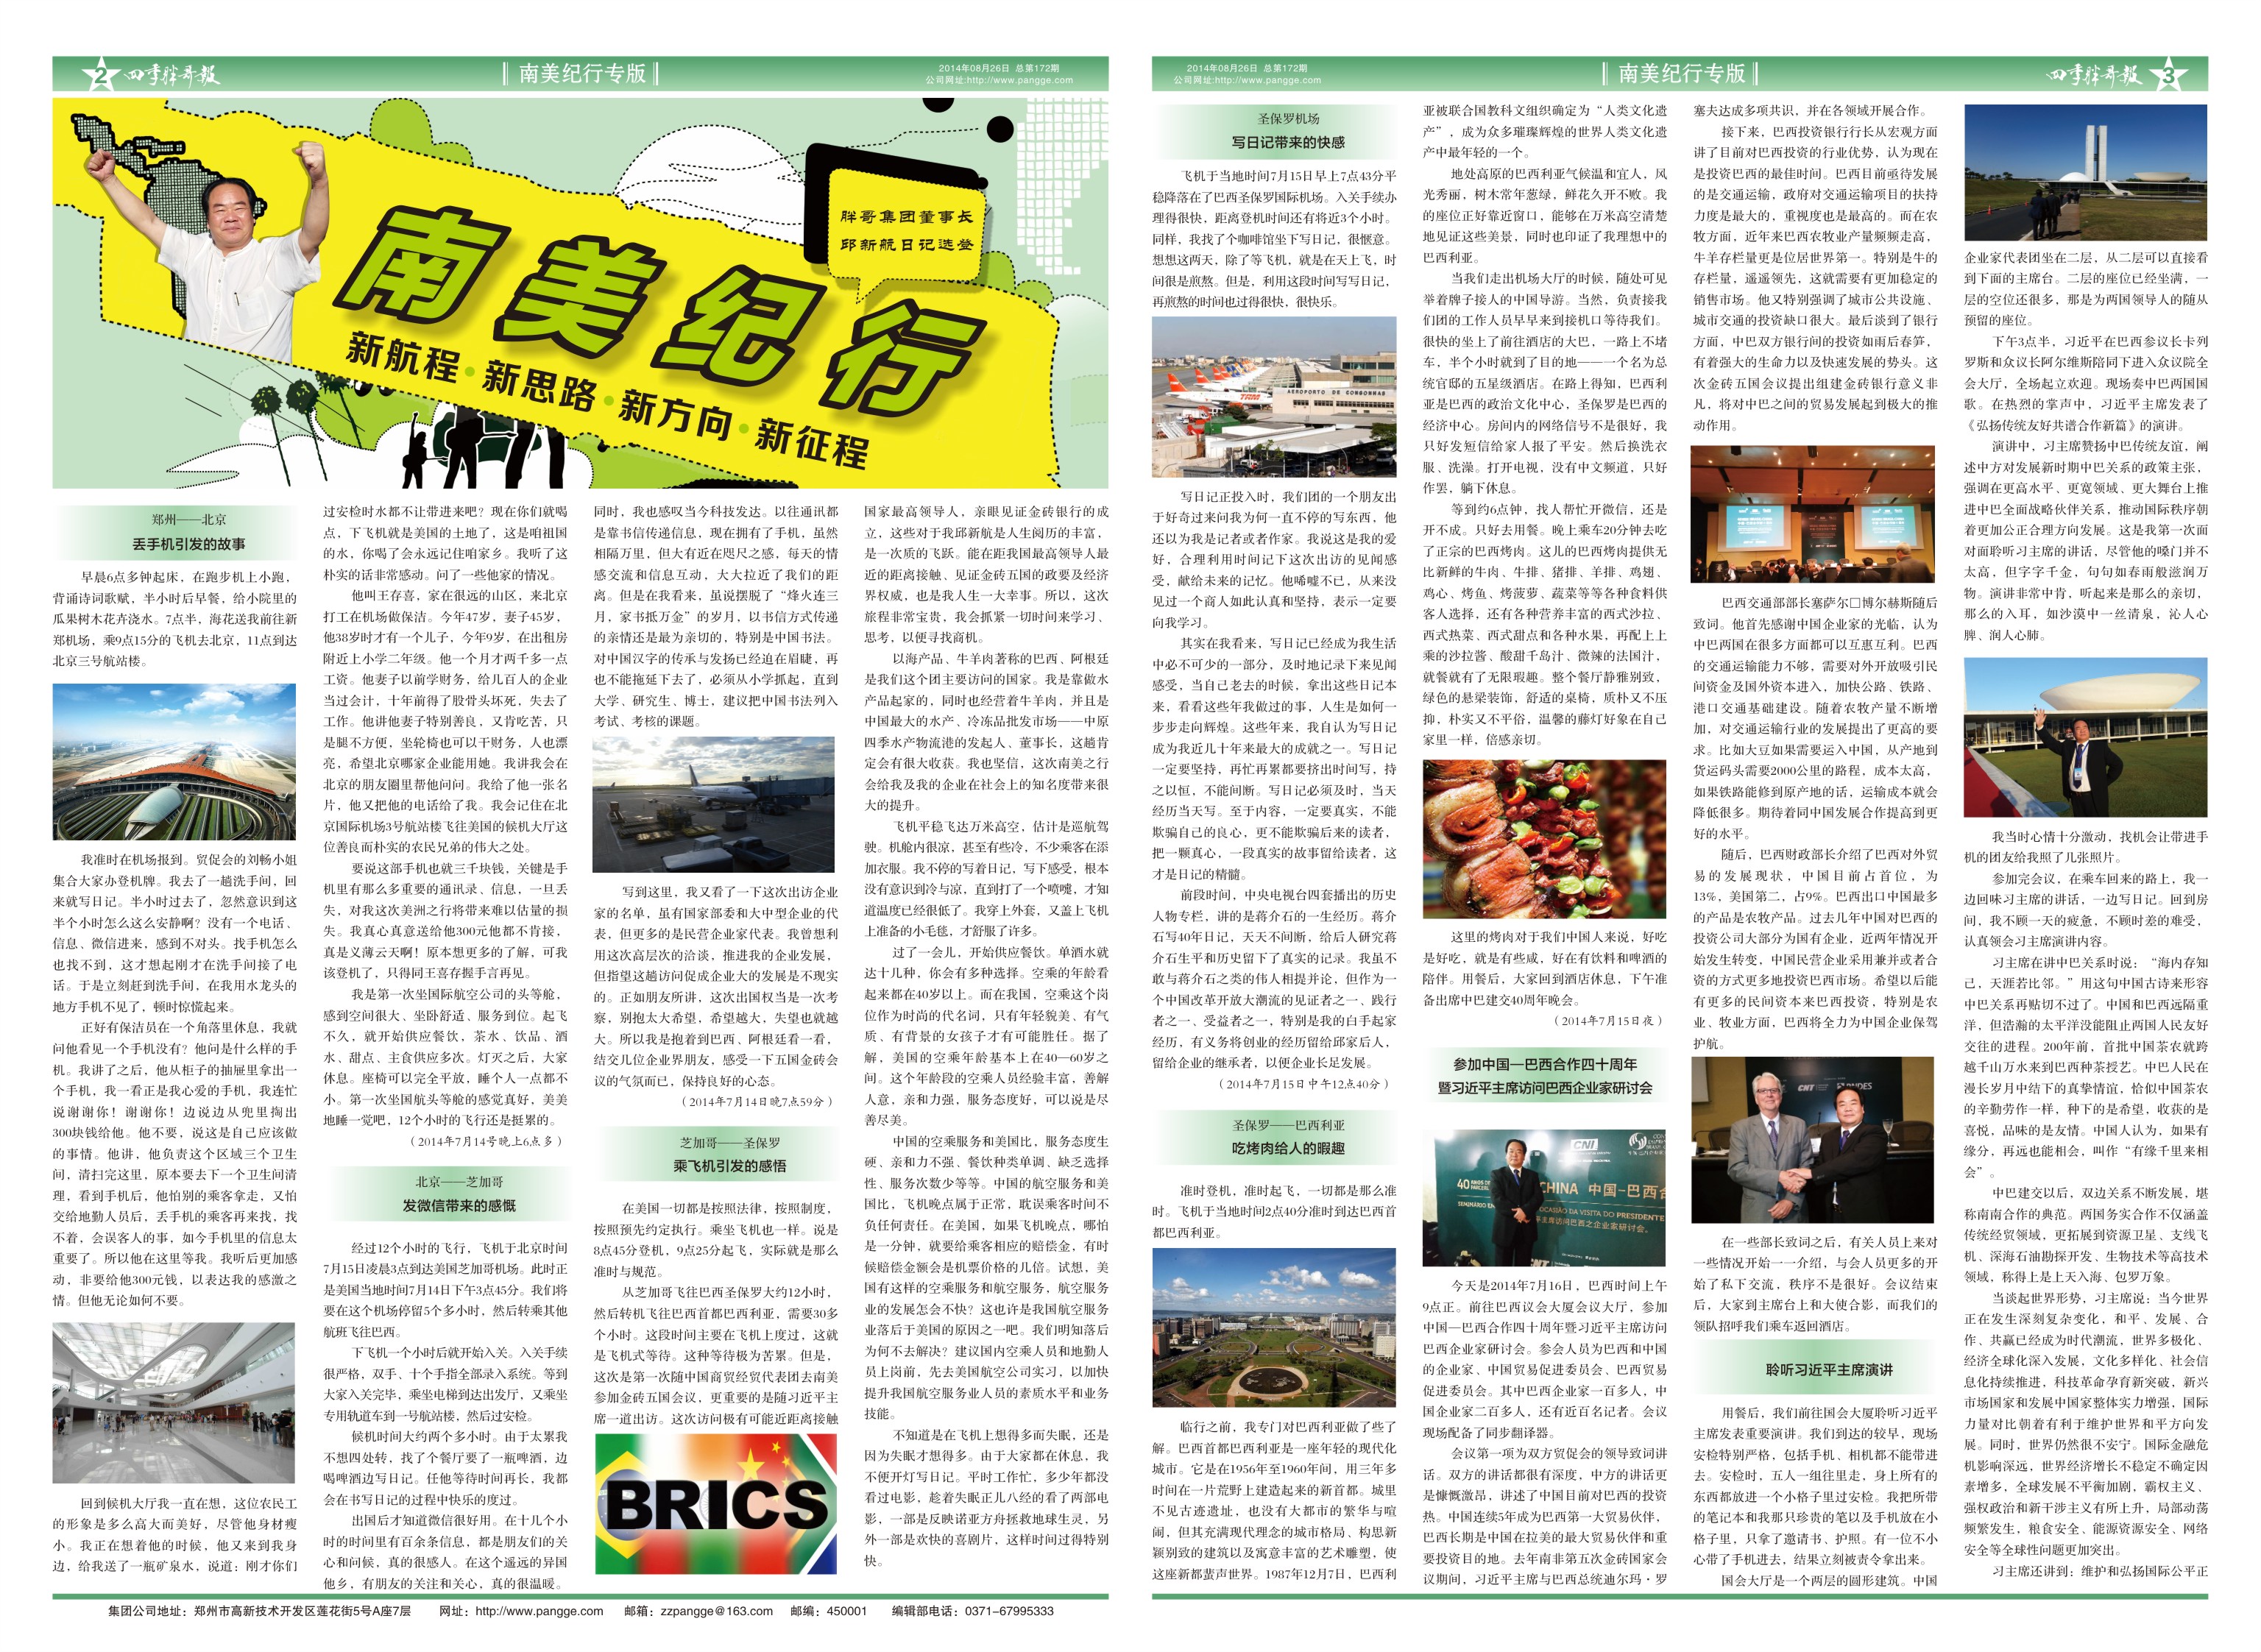 2014年7月，中国国家主席习近平出访拉美四国期间，亲切接见随行企业家代表邱新航先生。